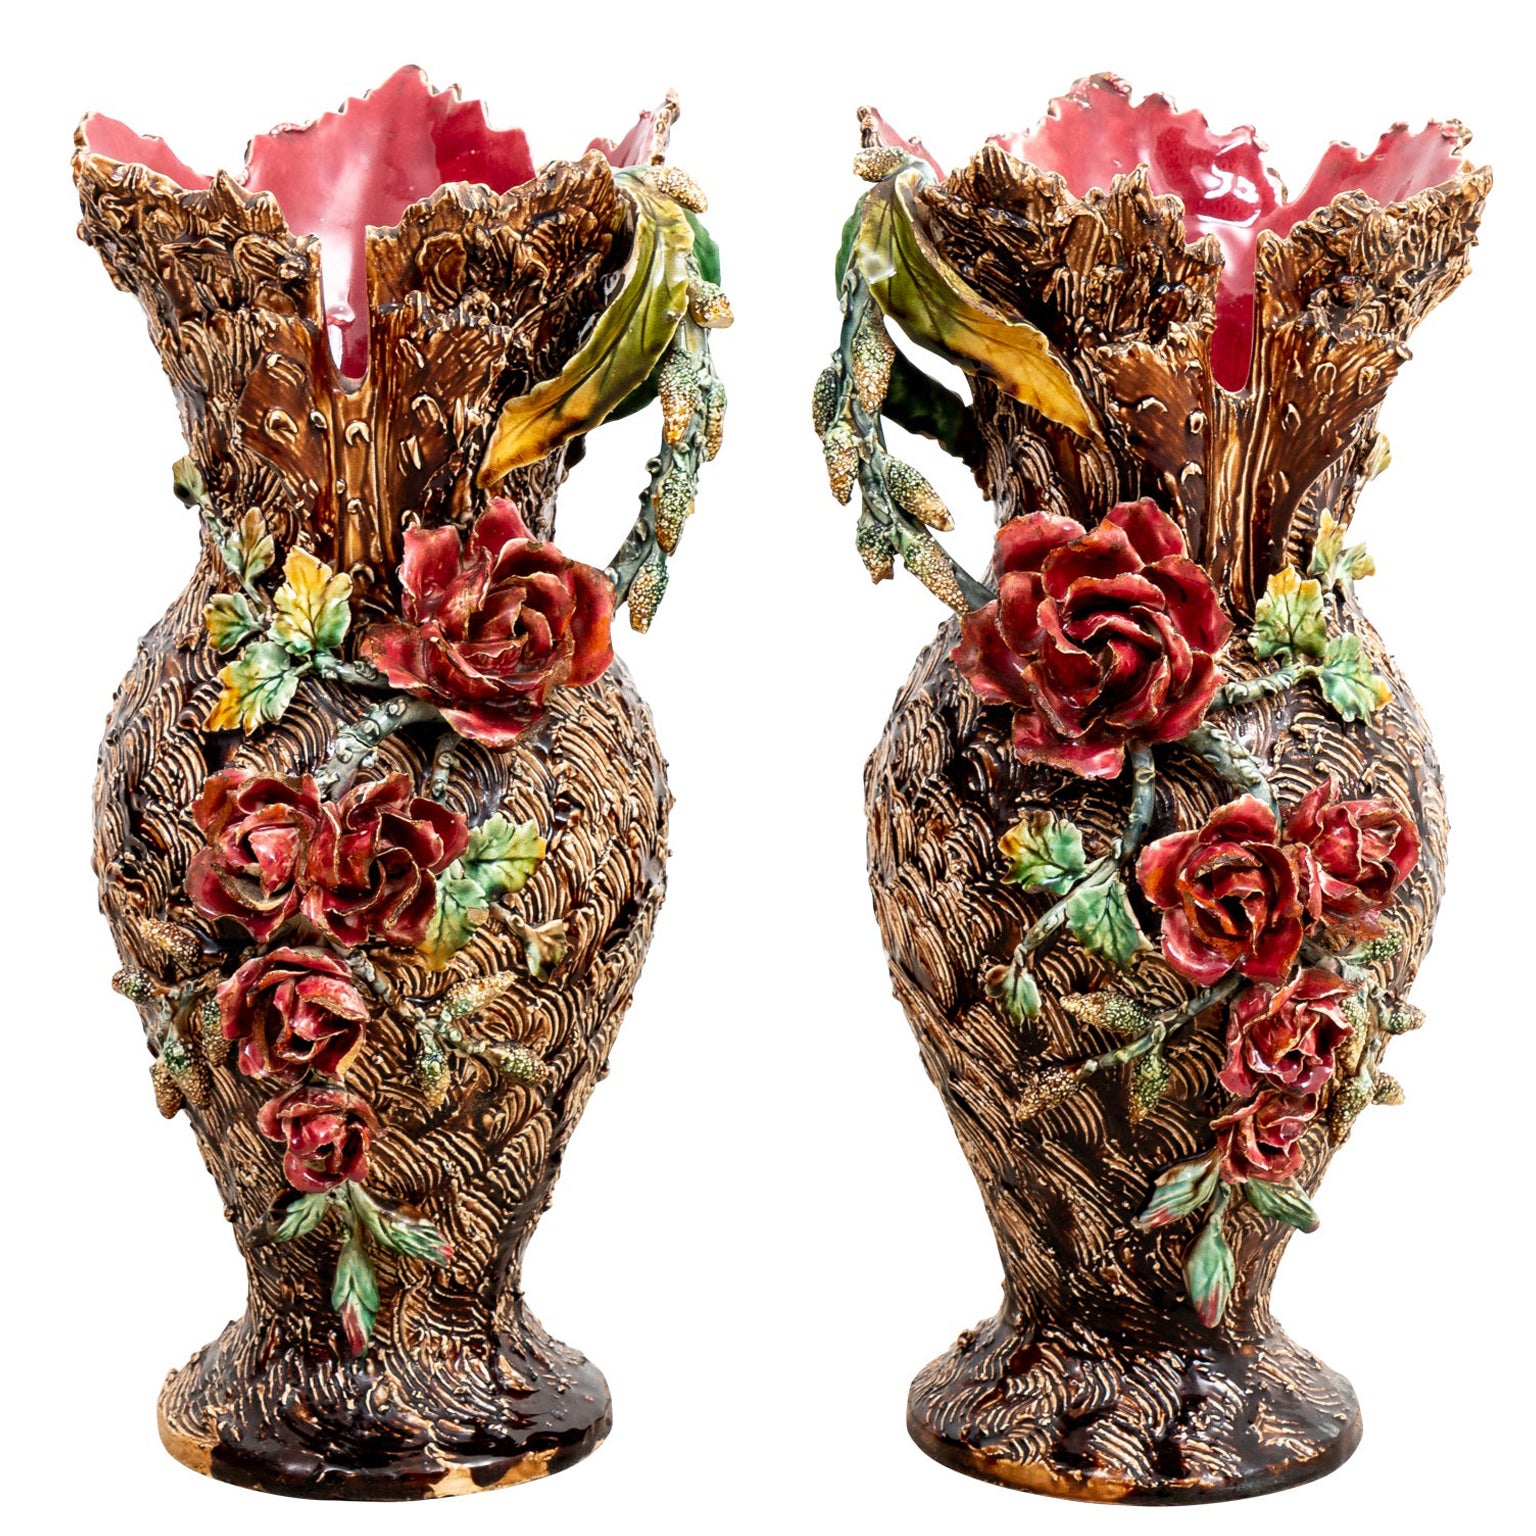 Pair of 19th Century Barbotine Vases